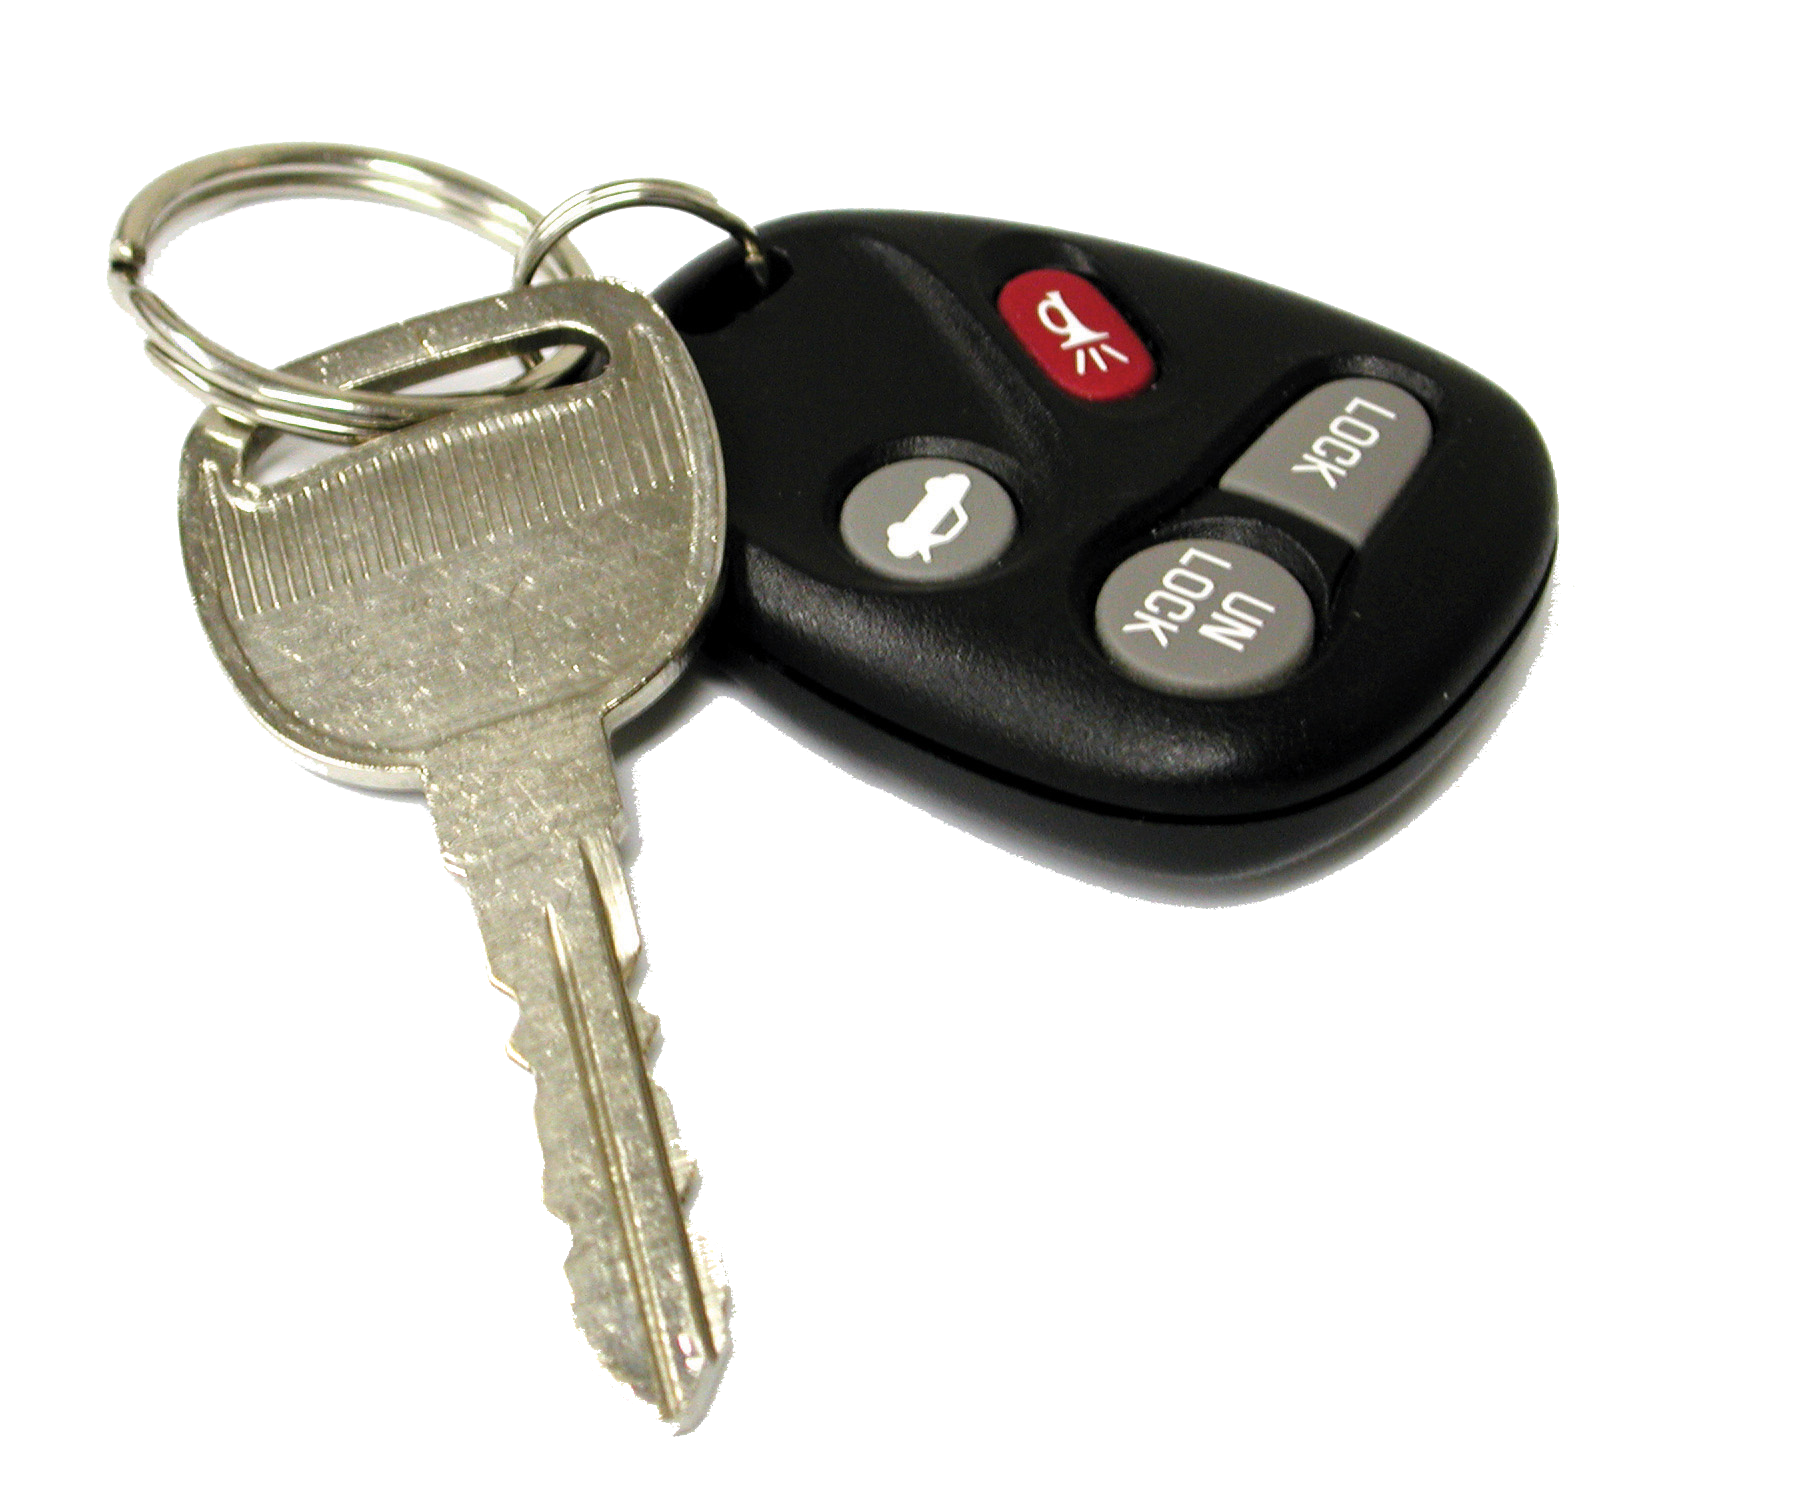 Ключ от машины гренни. Ключ автомобильный. Ключи от машины. Автомобильные ключи с сигнализацией. Ключики от машины.